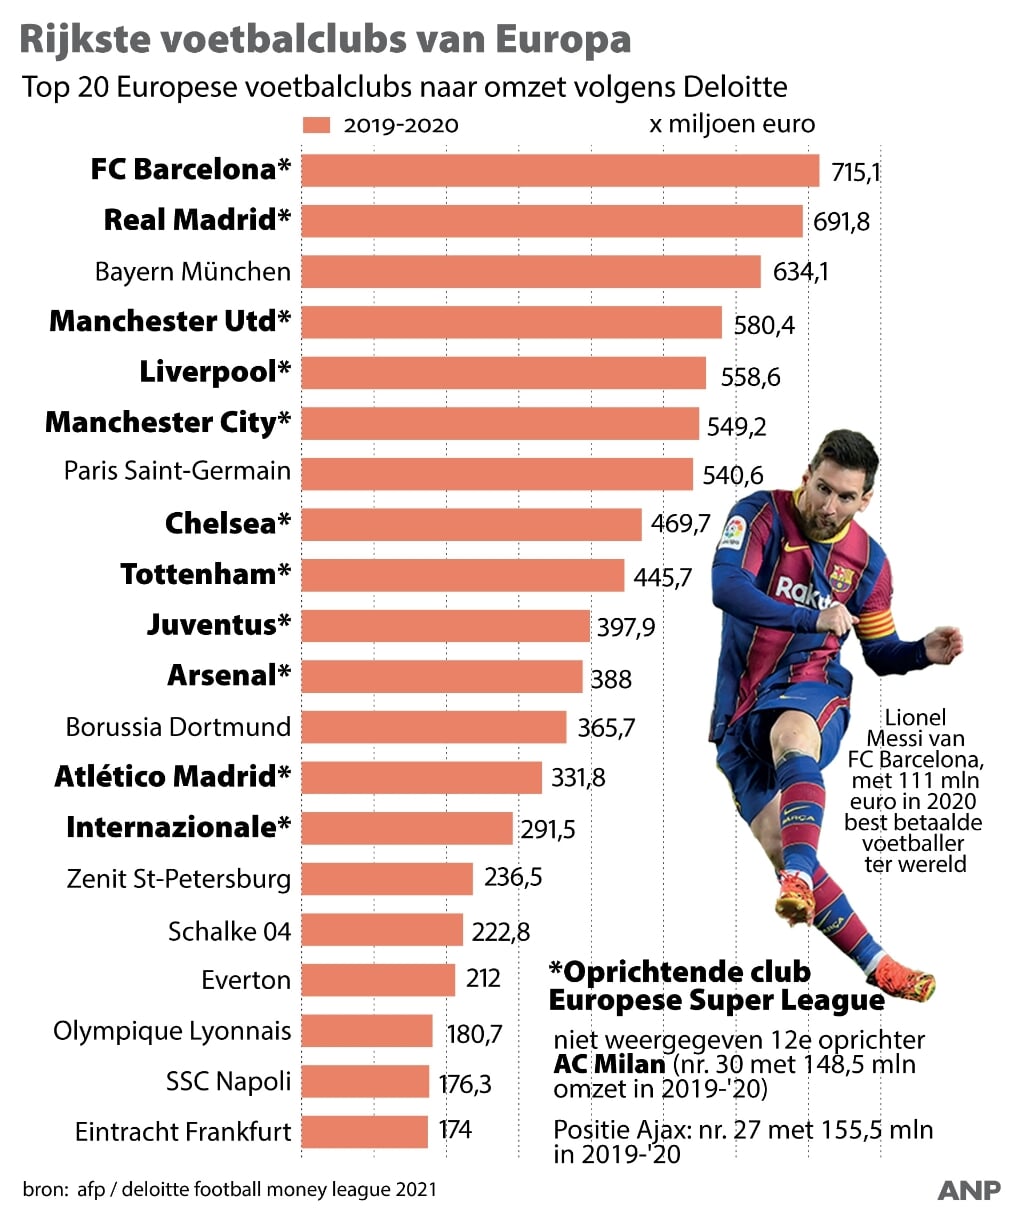 Top 20 van de rijkste voetbalclubs van Europa. 